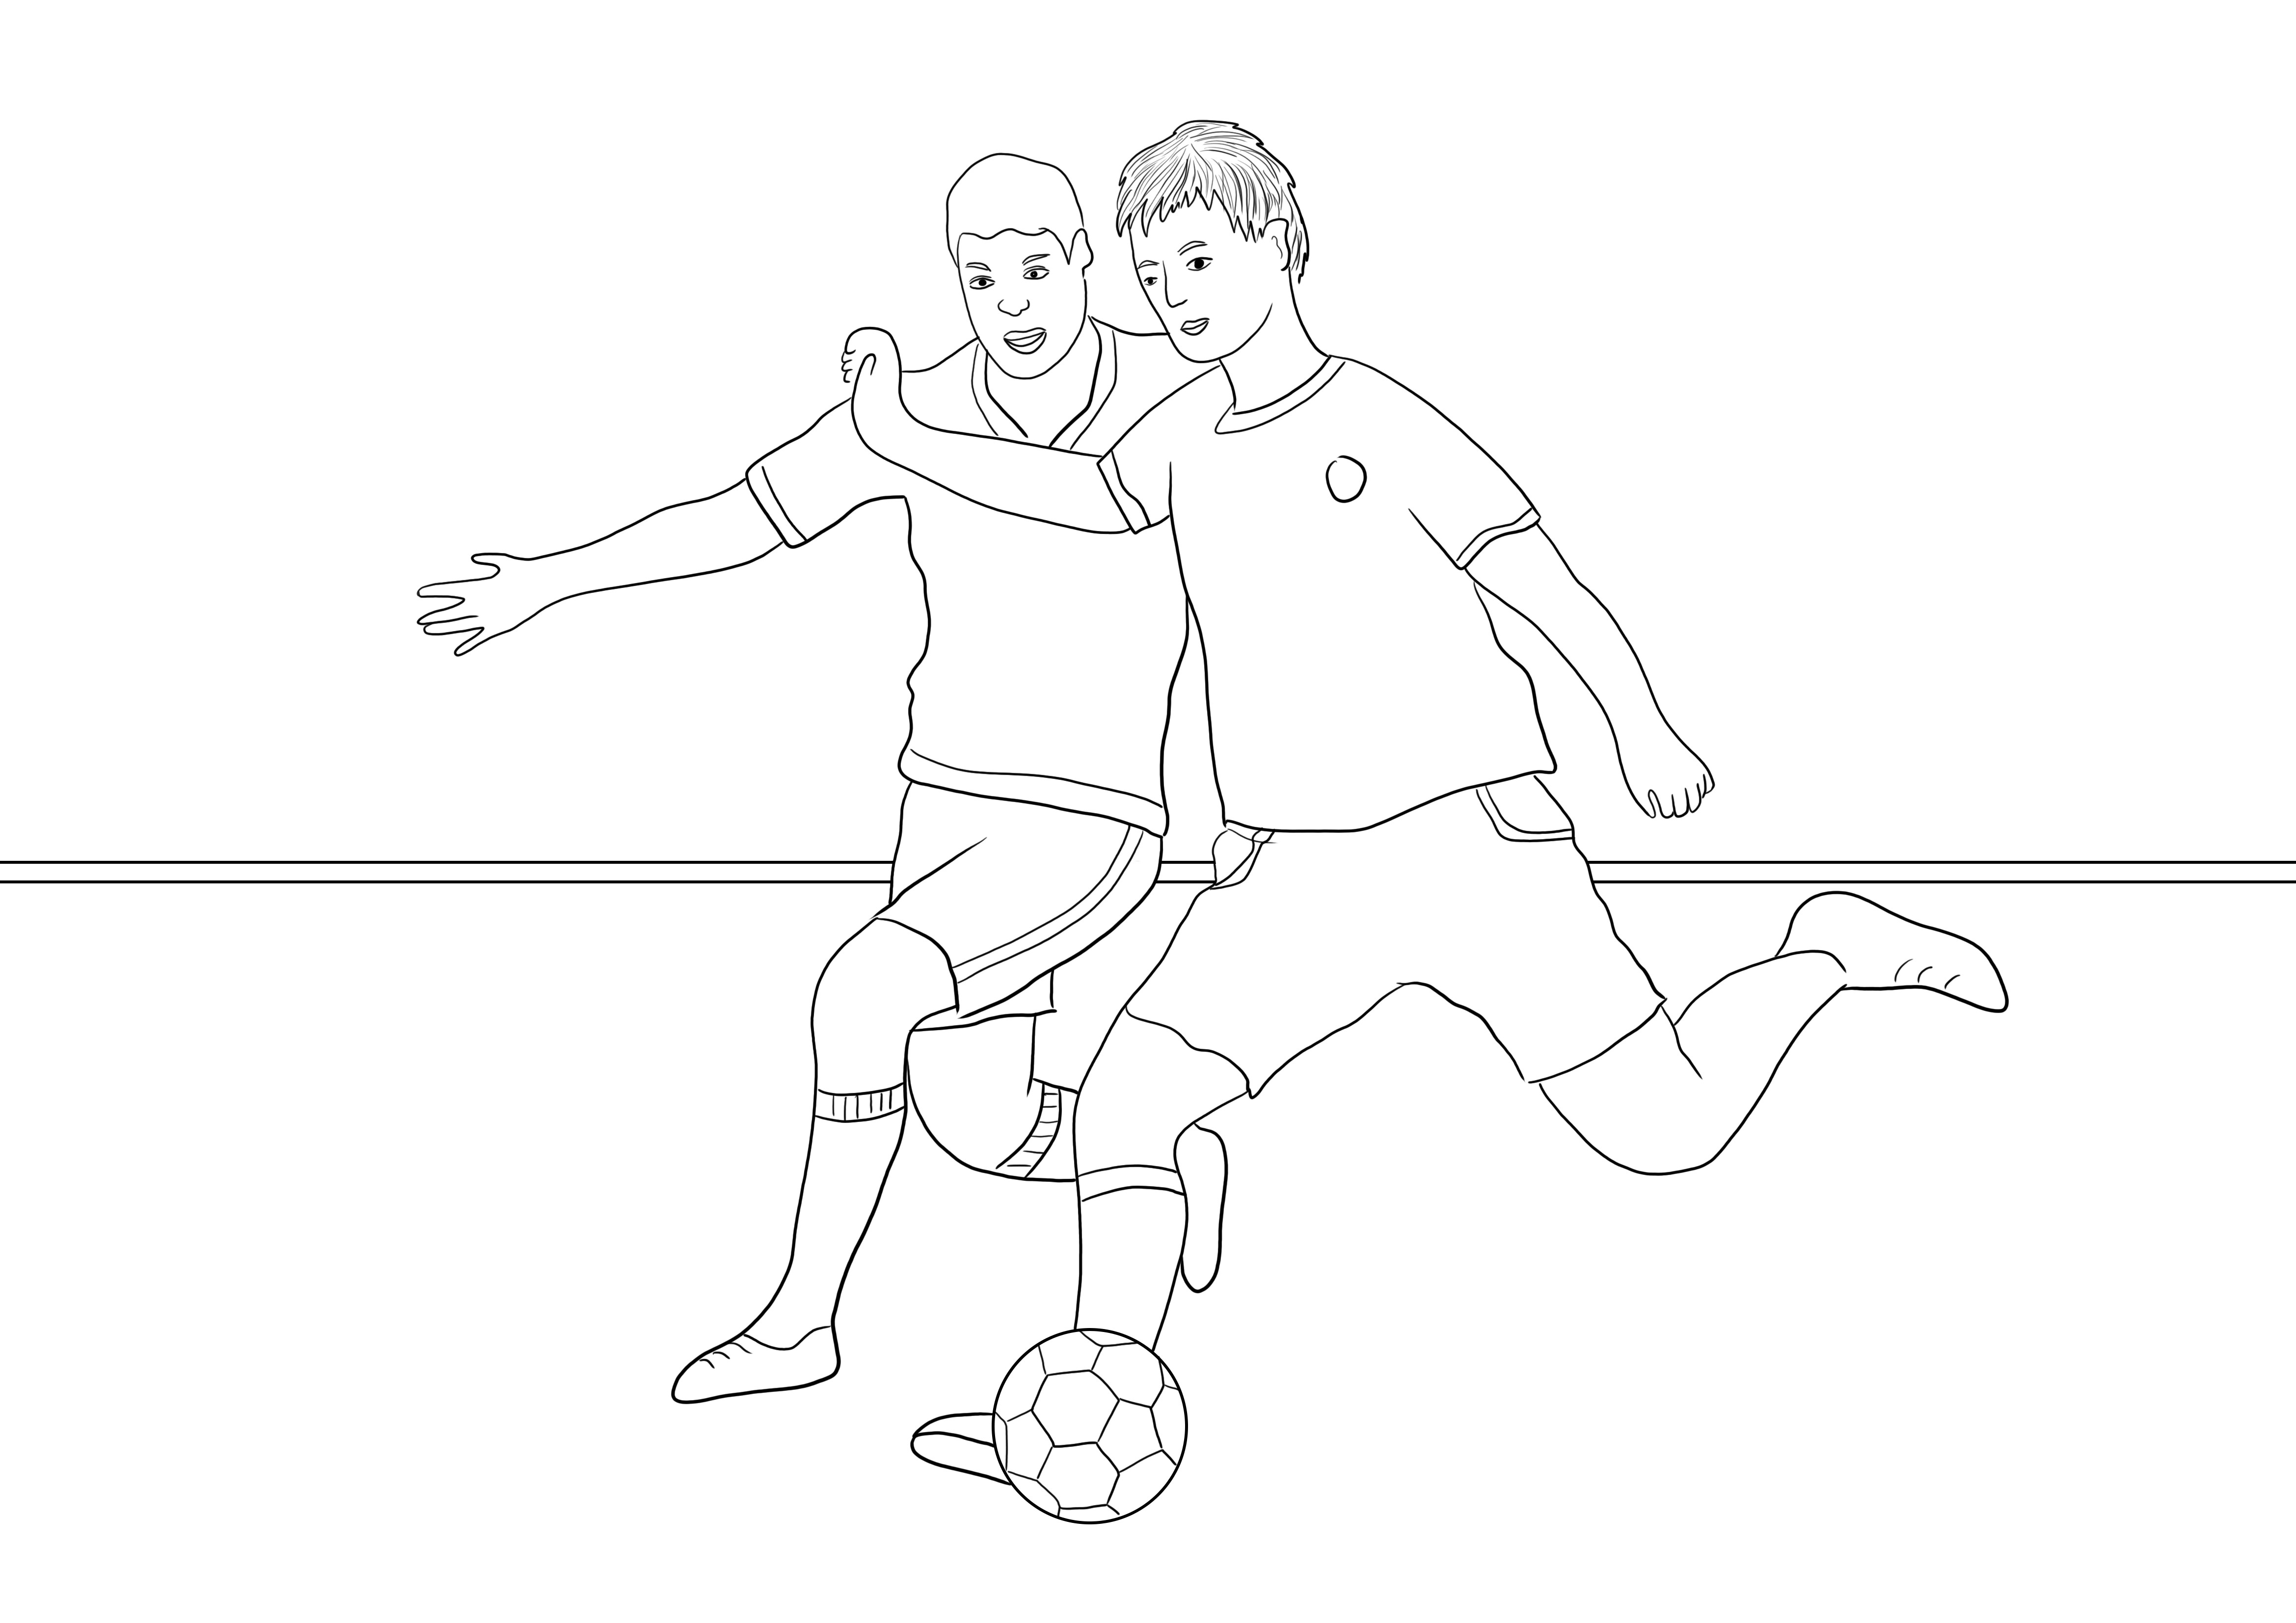 Download gratuito de dois jogadores de futebol em execução para colorir fácil